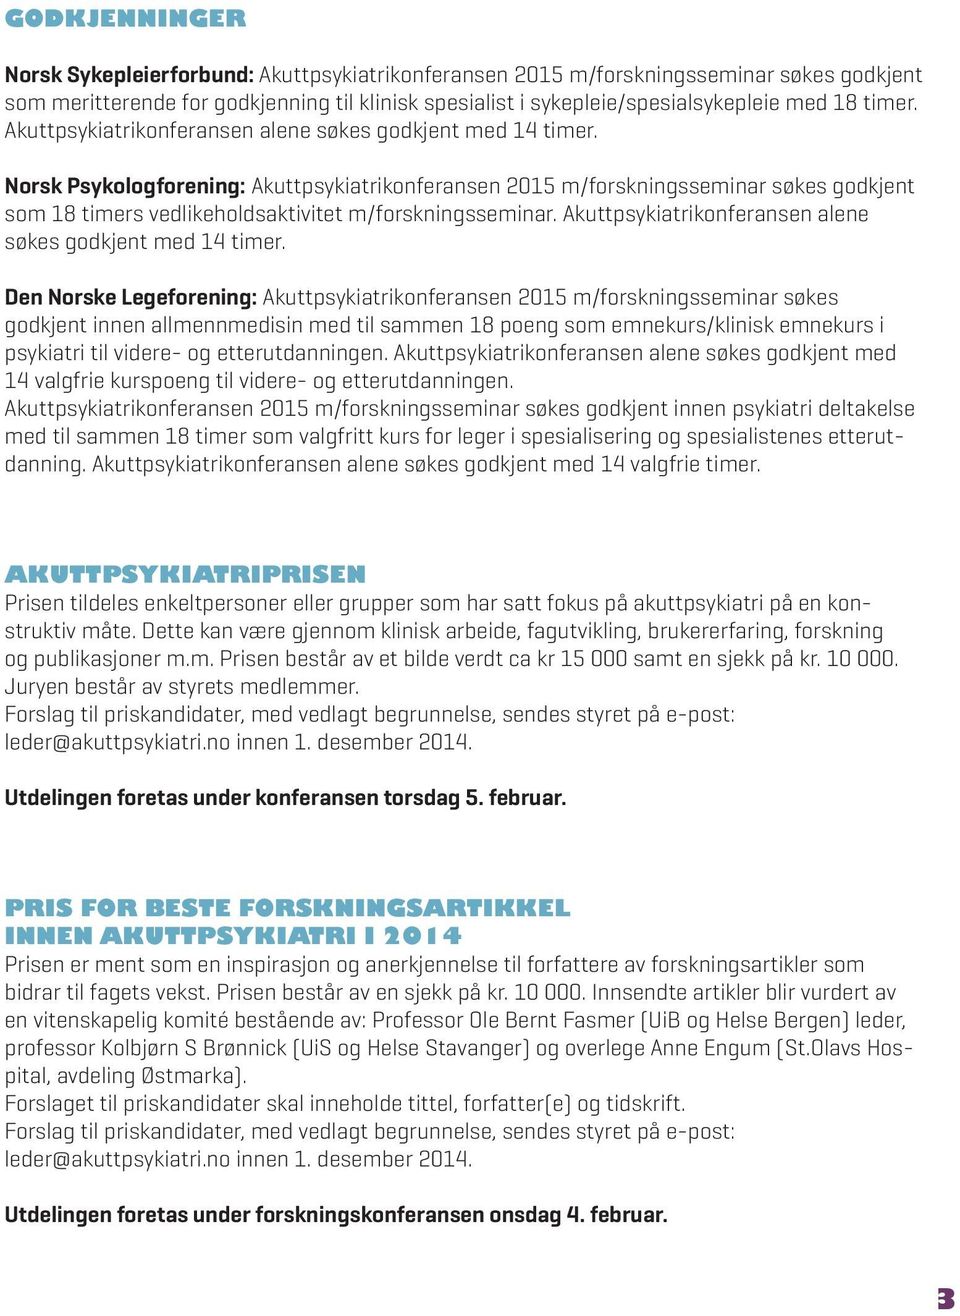 Norsk Psykologforening: Akuttpsykiatrikonferansen 2015 m/forskningsseminar søkes godkjent som 18 timers vedlikeholdsaktivitet m/forskningsseminar.